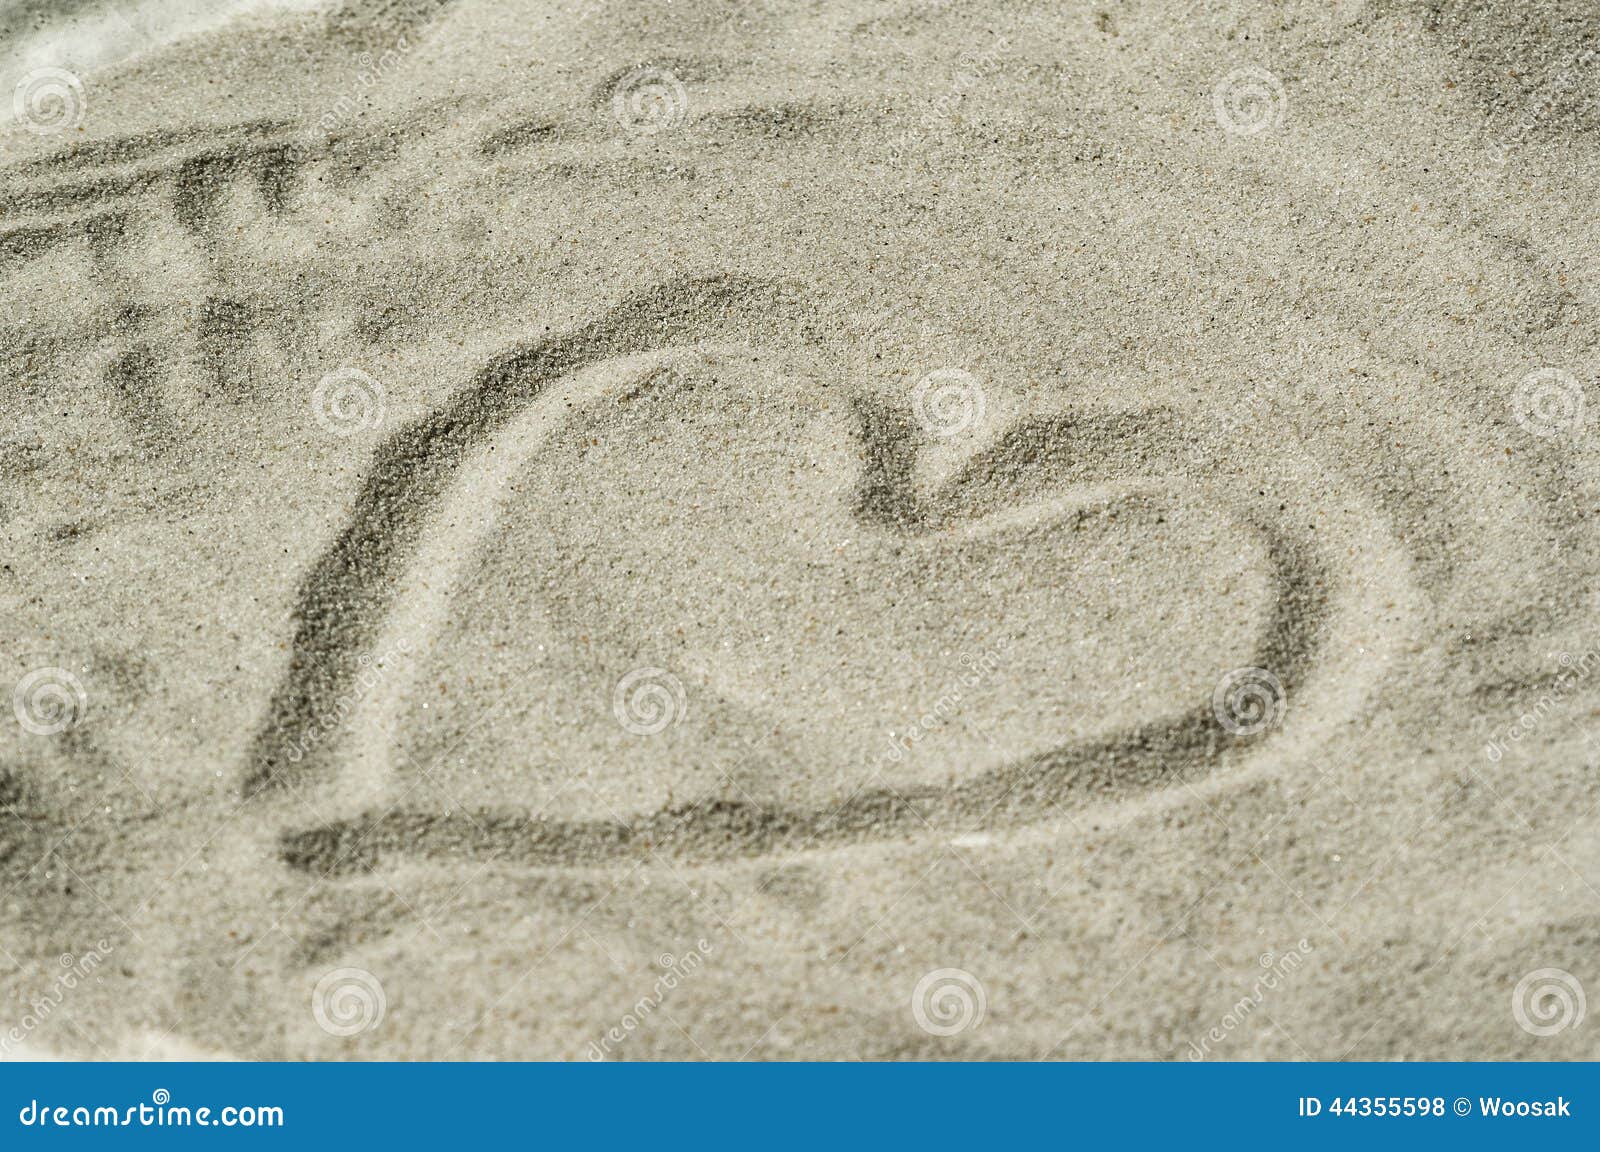 Καρδιά στην άμμο. Η μικρή καρδιά σύρει στην άμμο